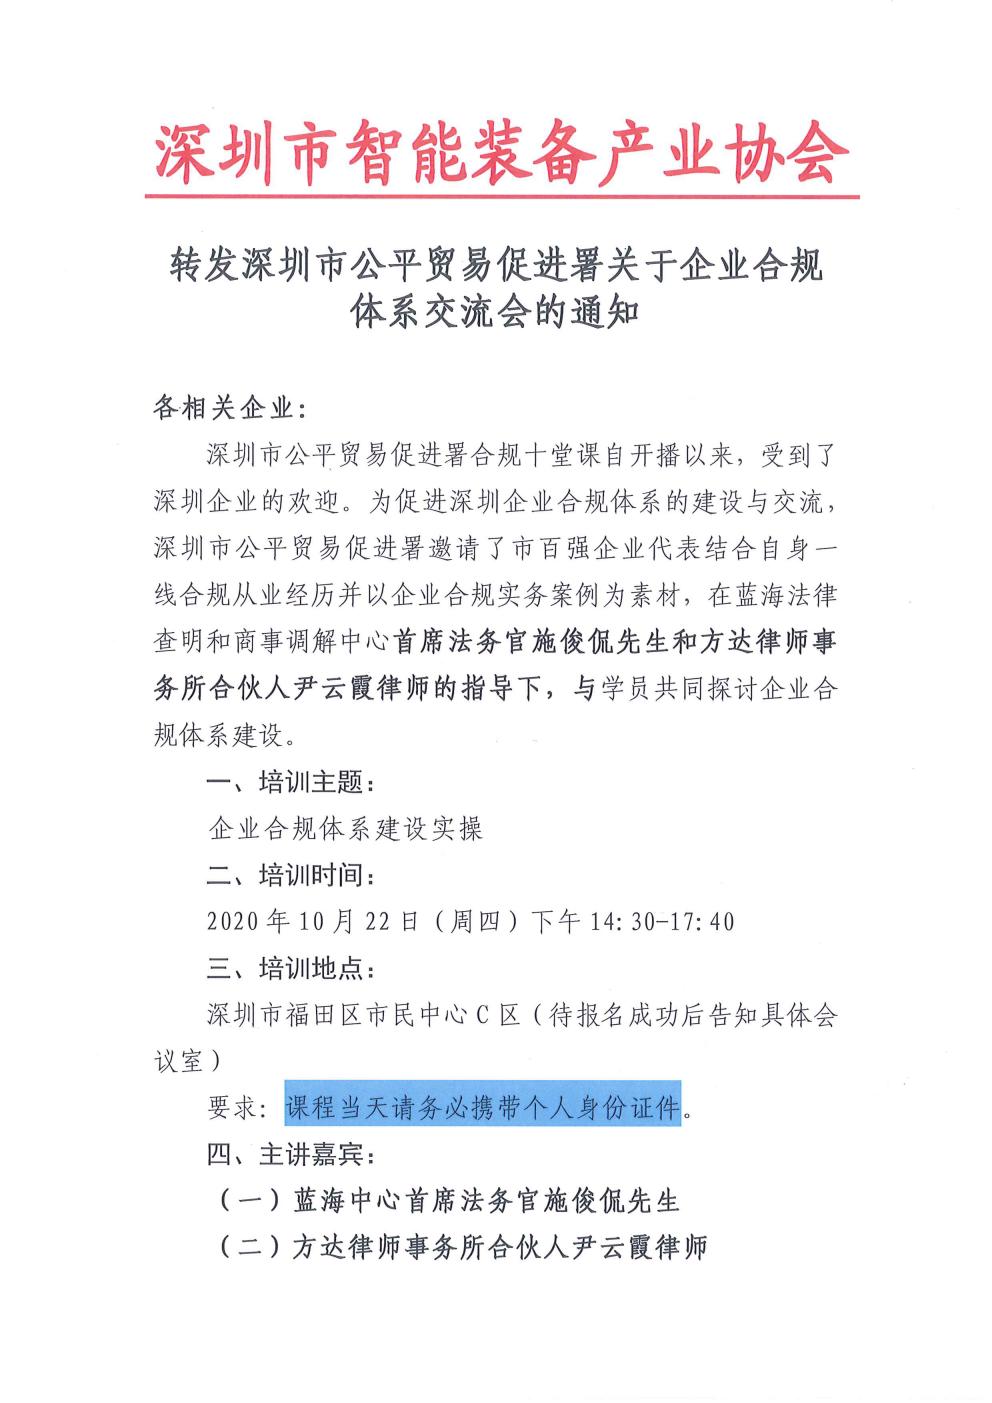 转发深圳市公平贸易促进署关于企业合规体系交流会的通知(图1)